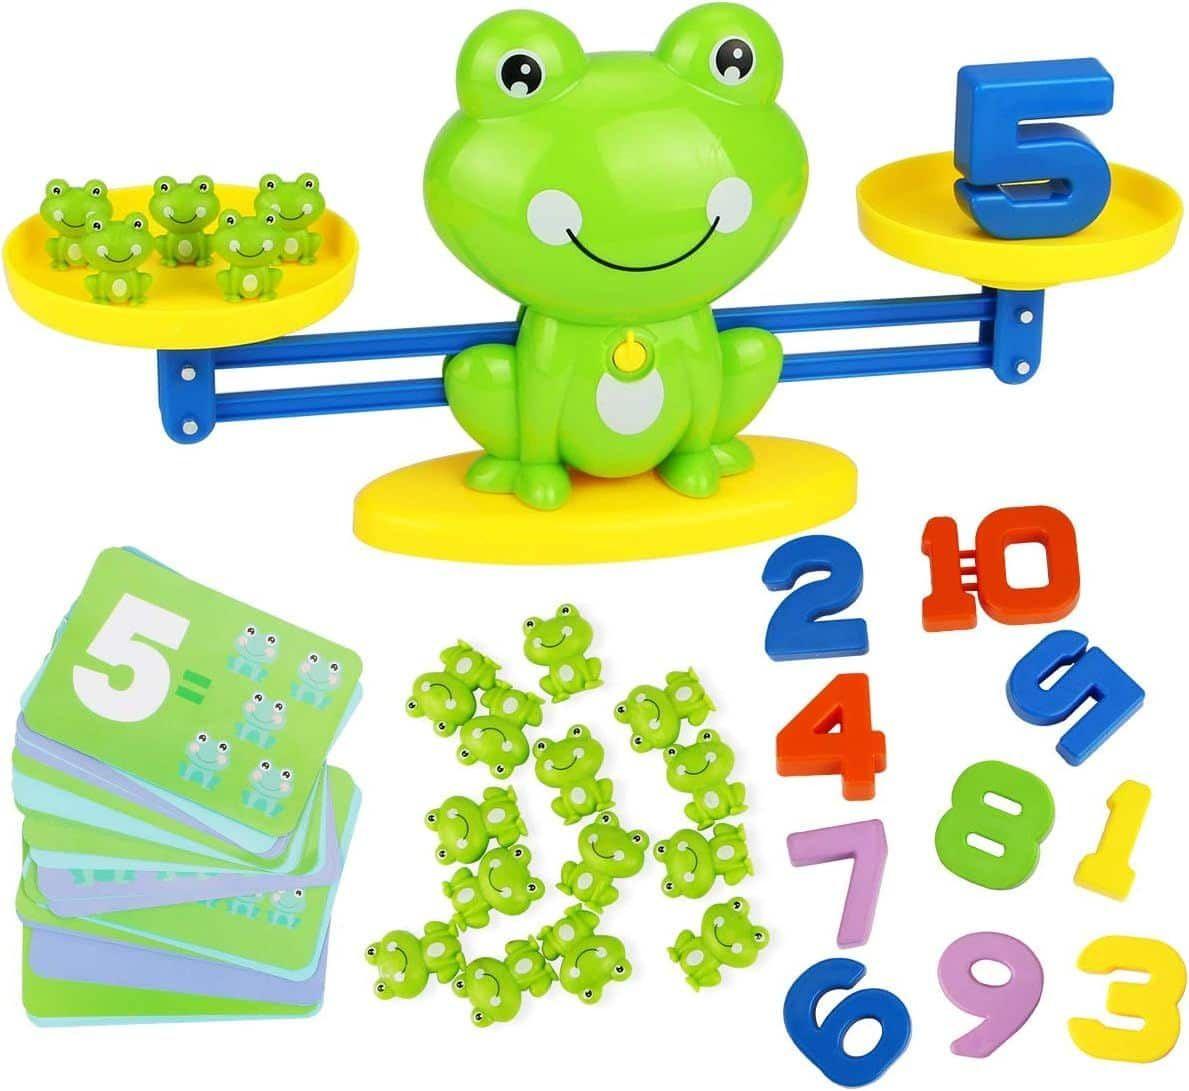 Jouets balance pour enfants, jeu de comptage des maths, animaux mignons,  apprentissage numérique, pour garçons et